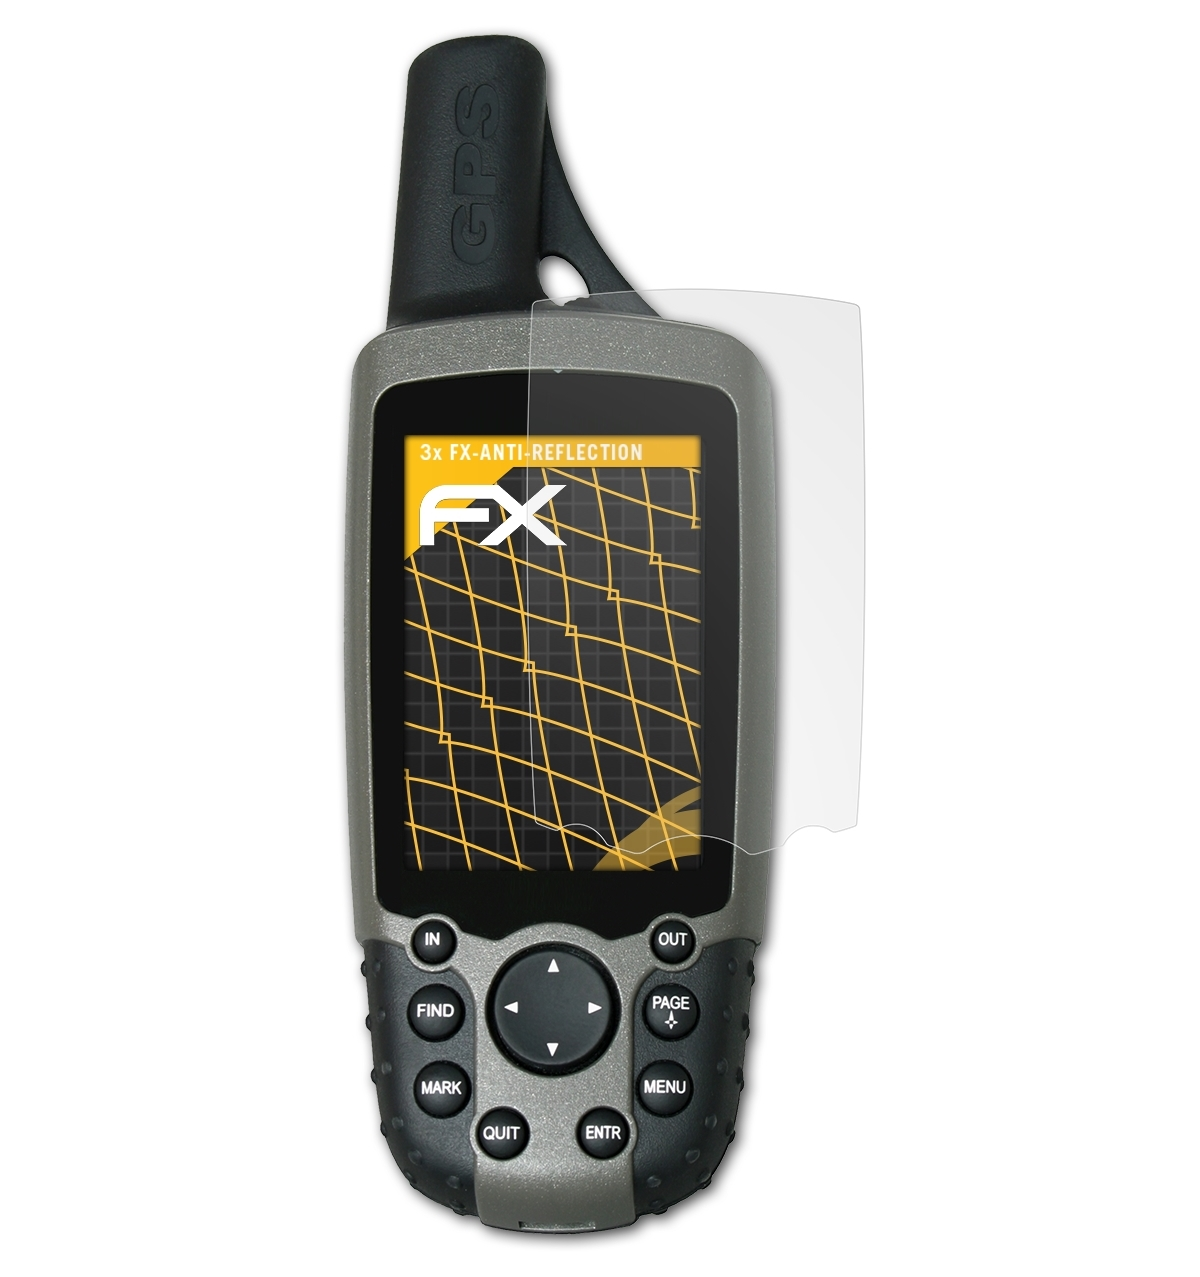 ATFOLIX 3x FX-Antireflex Displayschutz(für Garmin GPSMap 60CX)